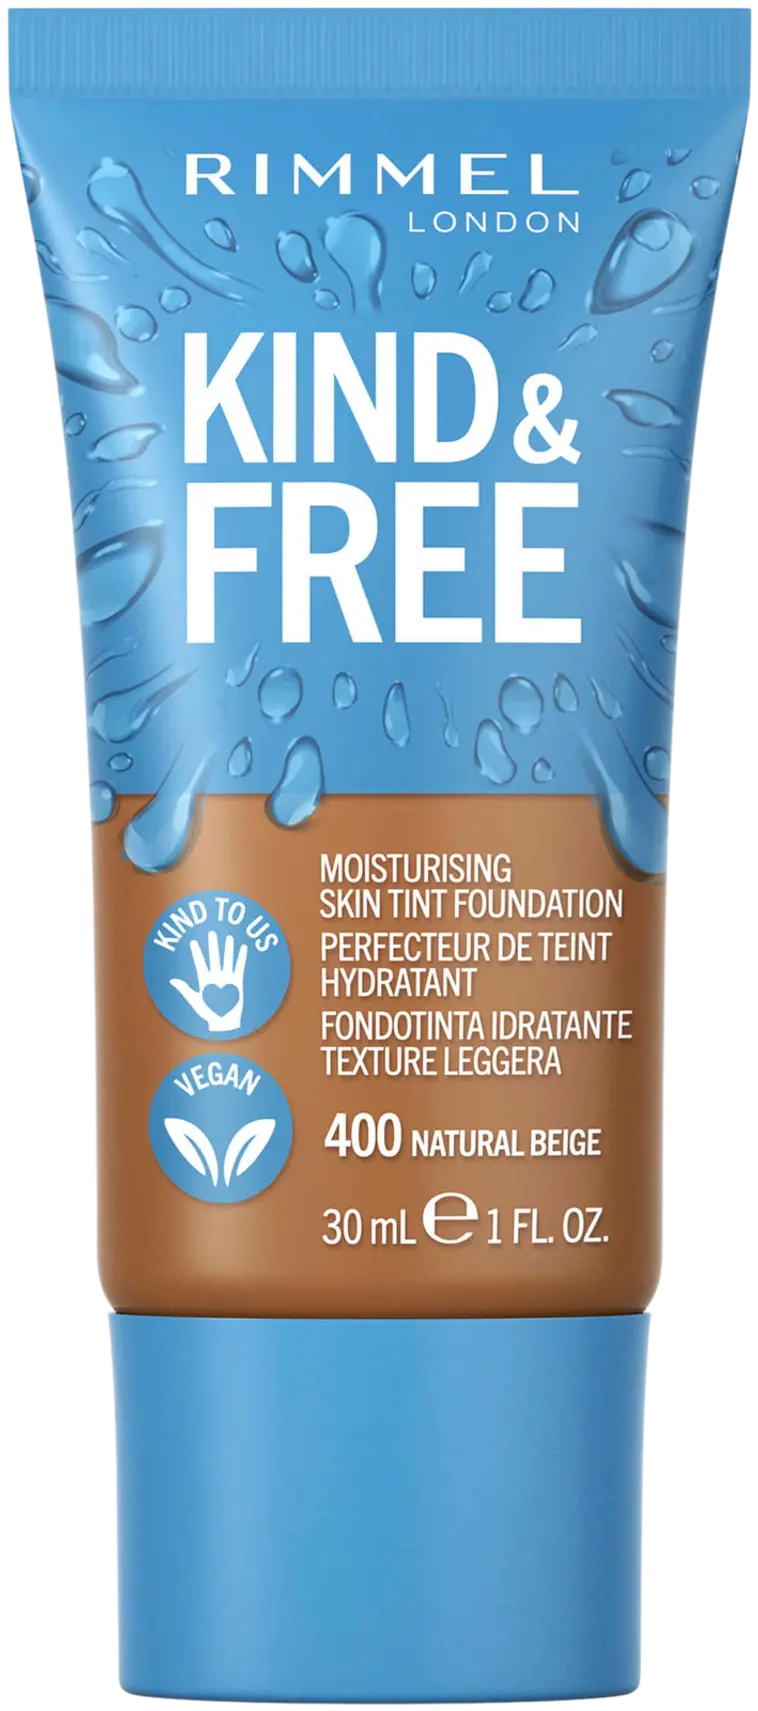 Rimmel Kind & Free Skin Tint Foundation 30 ml, 400 Natural Beige meikkivoide  | Prisma verkkokauppa